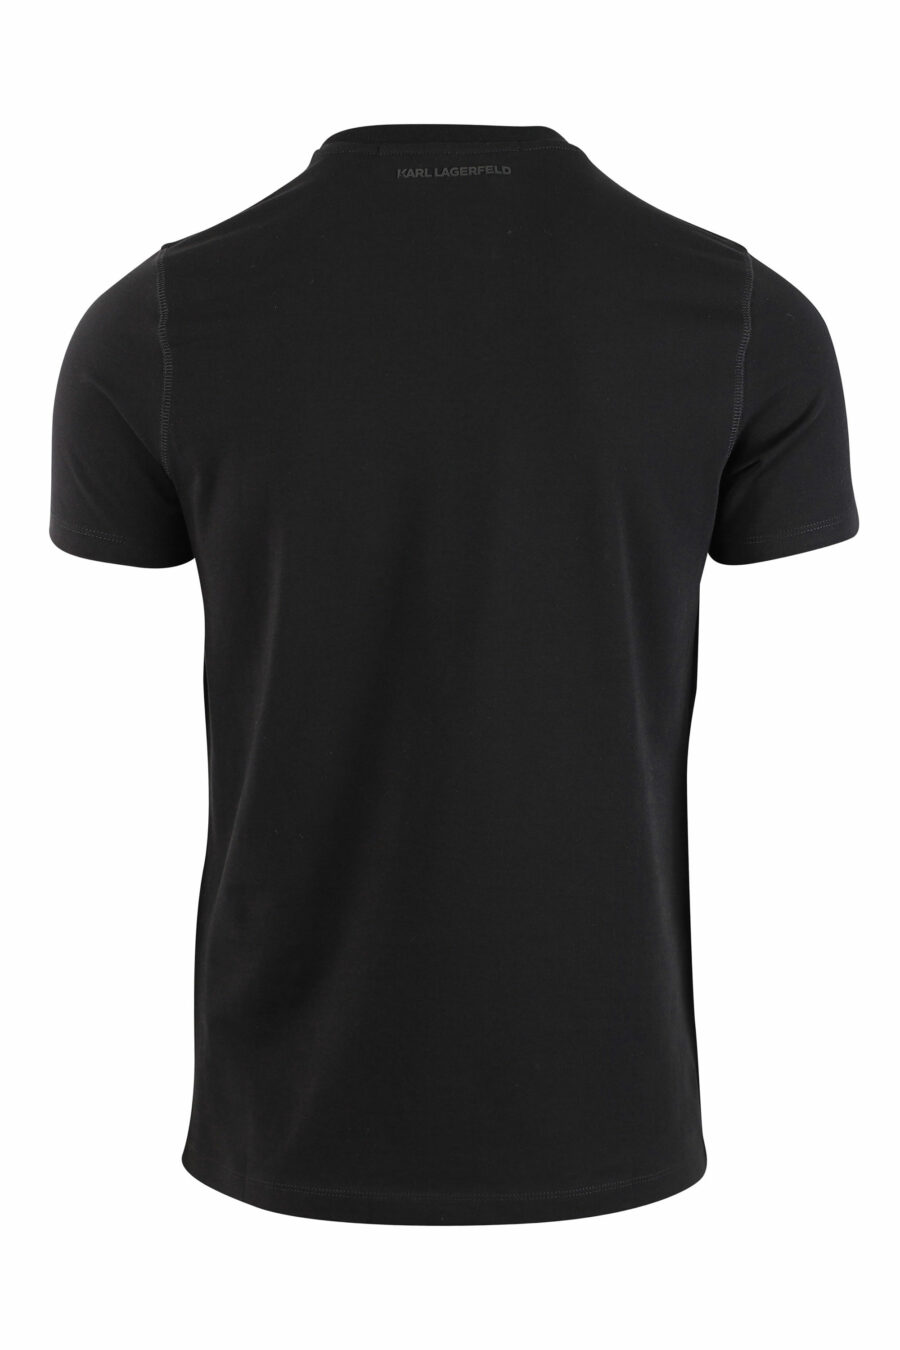 Camiseta negra con maxilogo "karl" silueta - IMG 0012 1